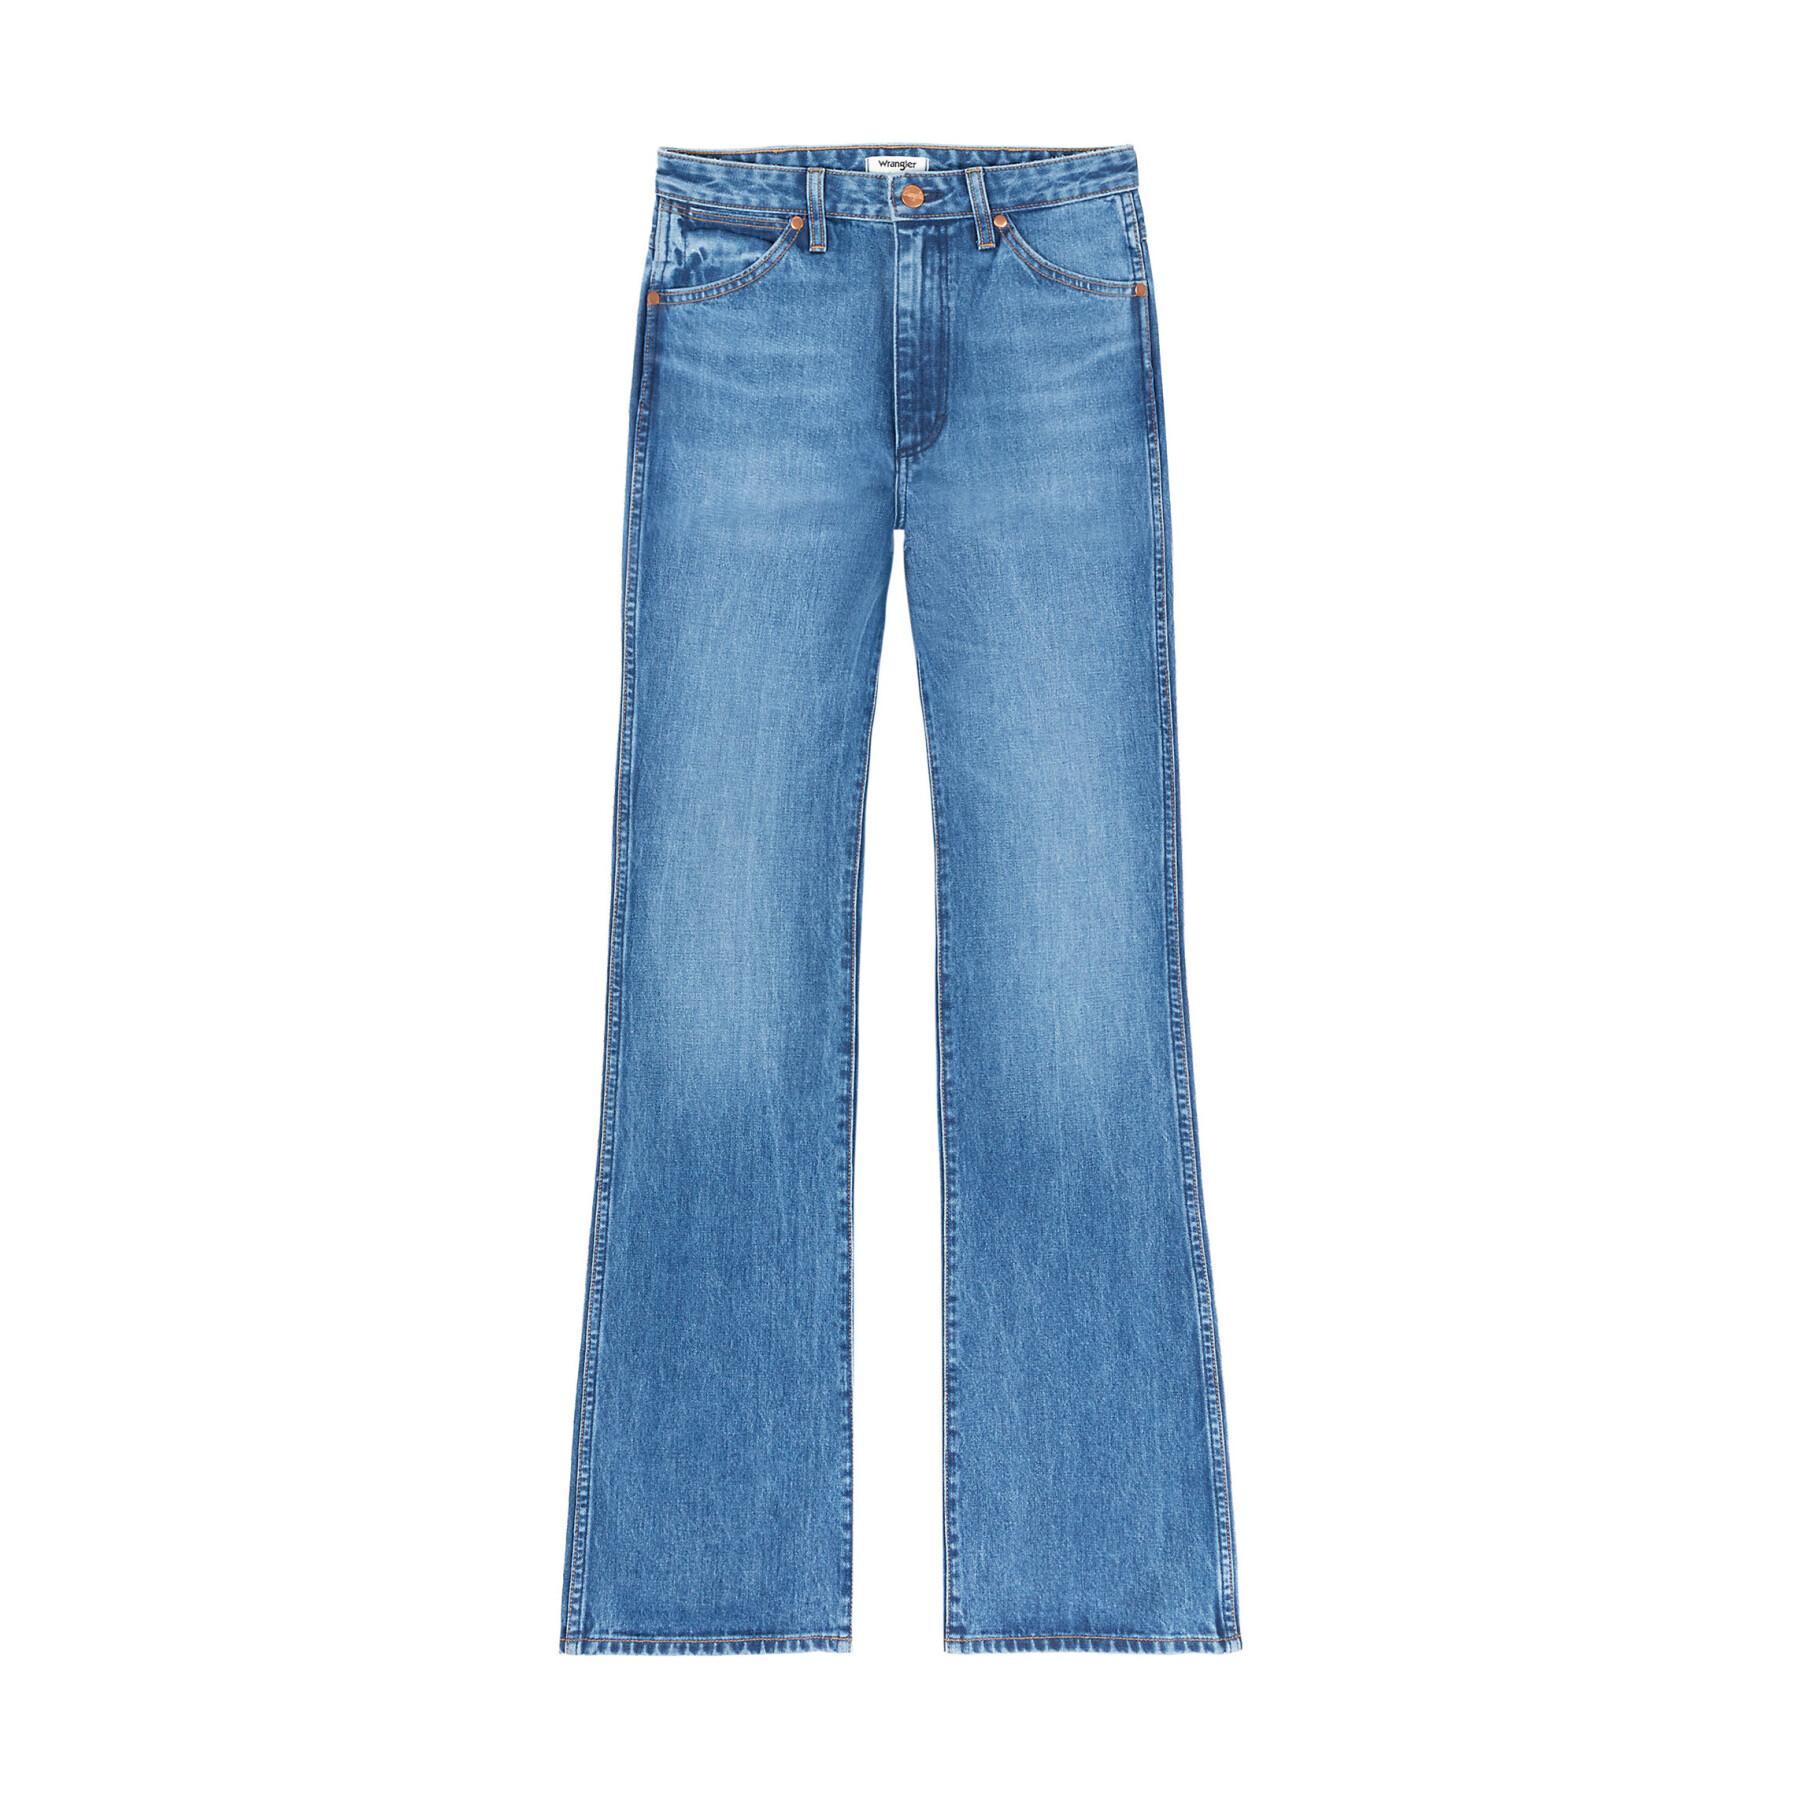 Jeans Wrangler Westward